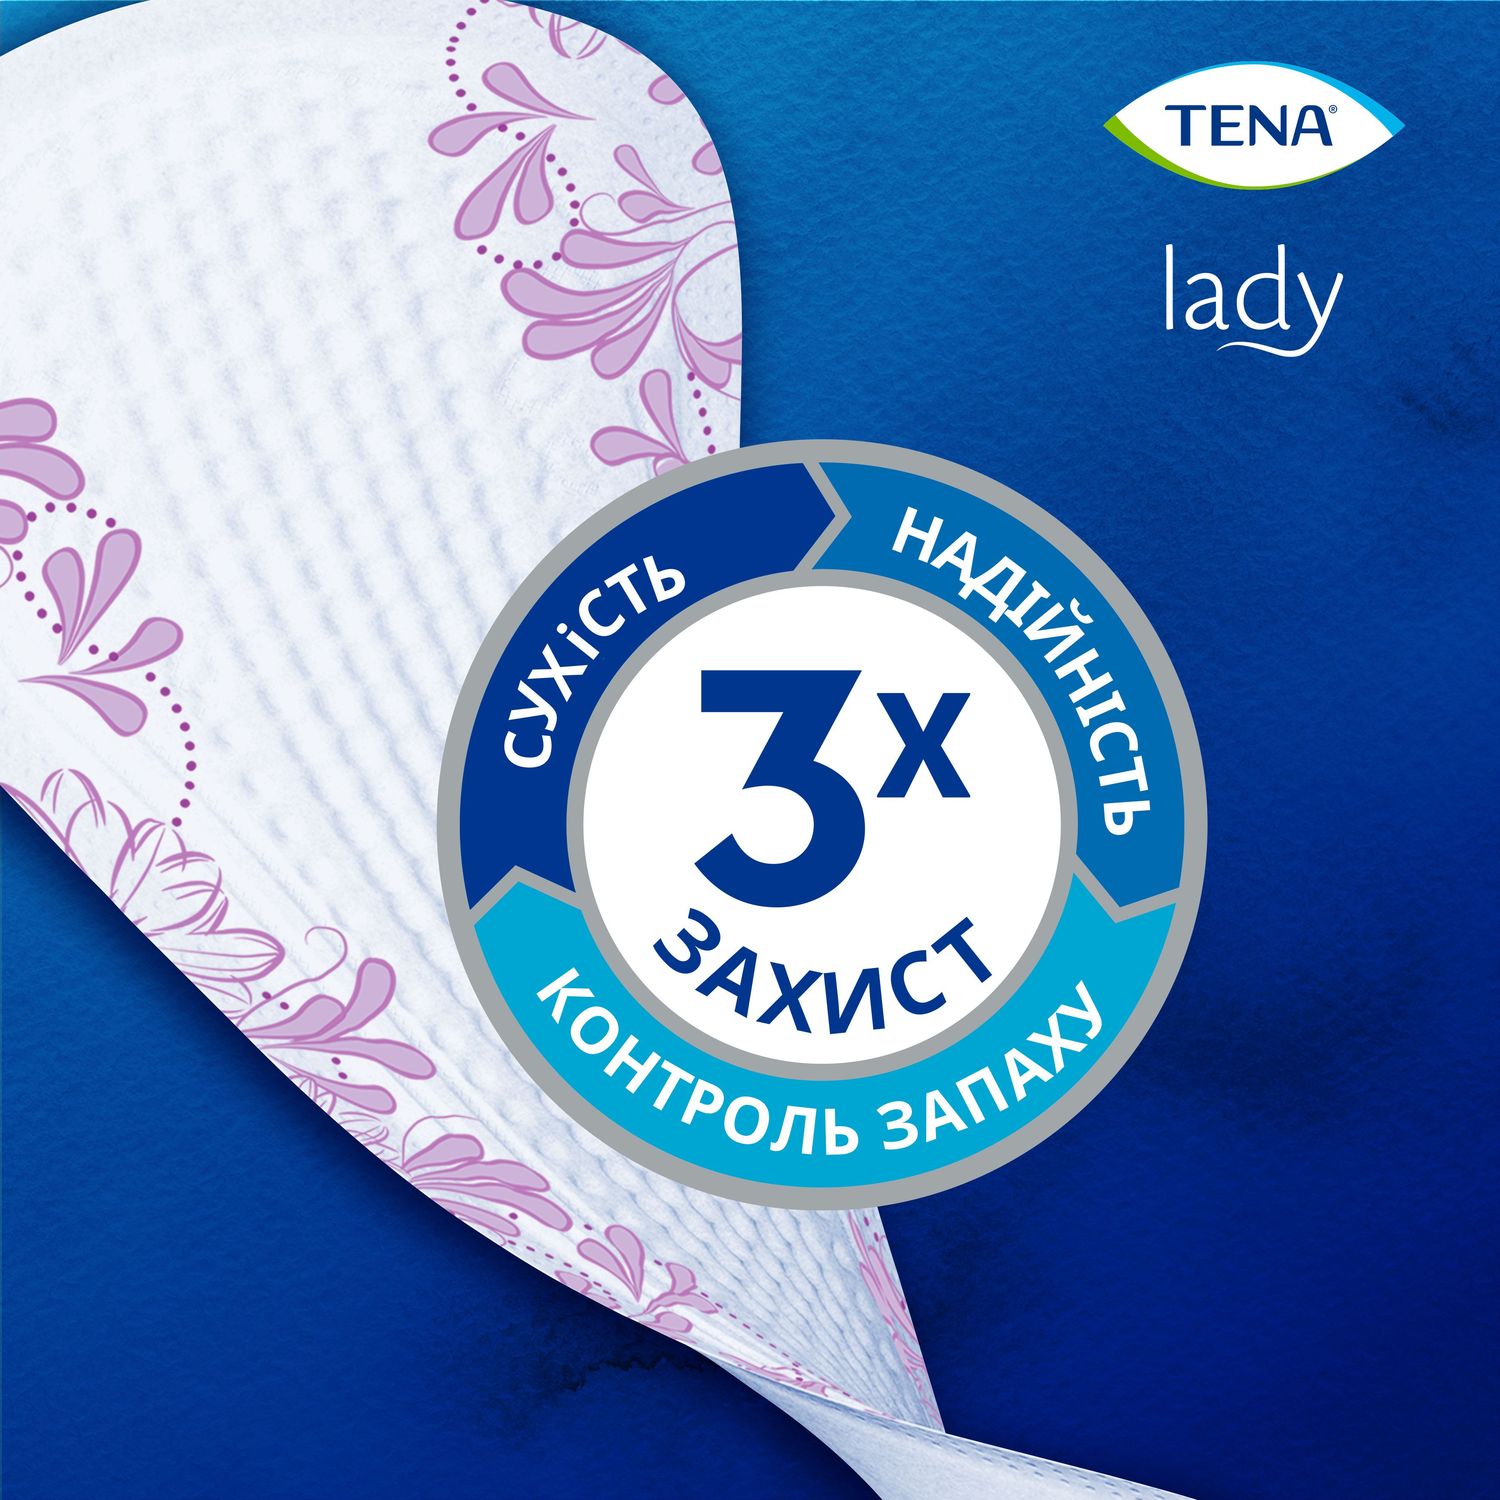 Урологическая прокладка Tena Lady Slim Mini Magic 0.5 капель 34 шт. - фото 4